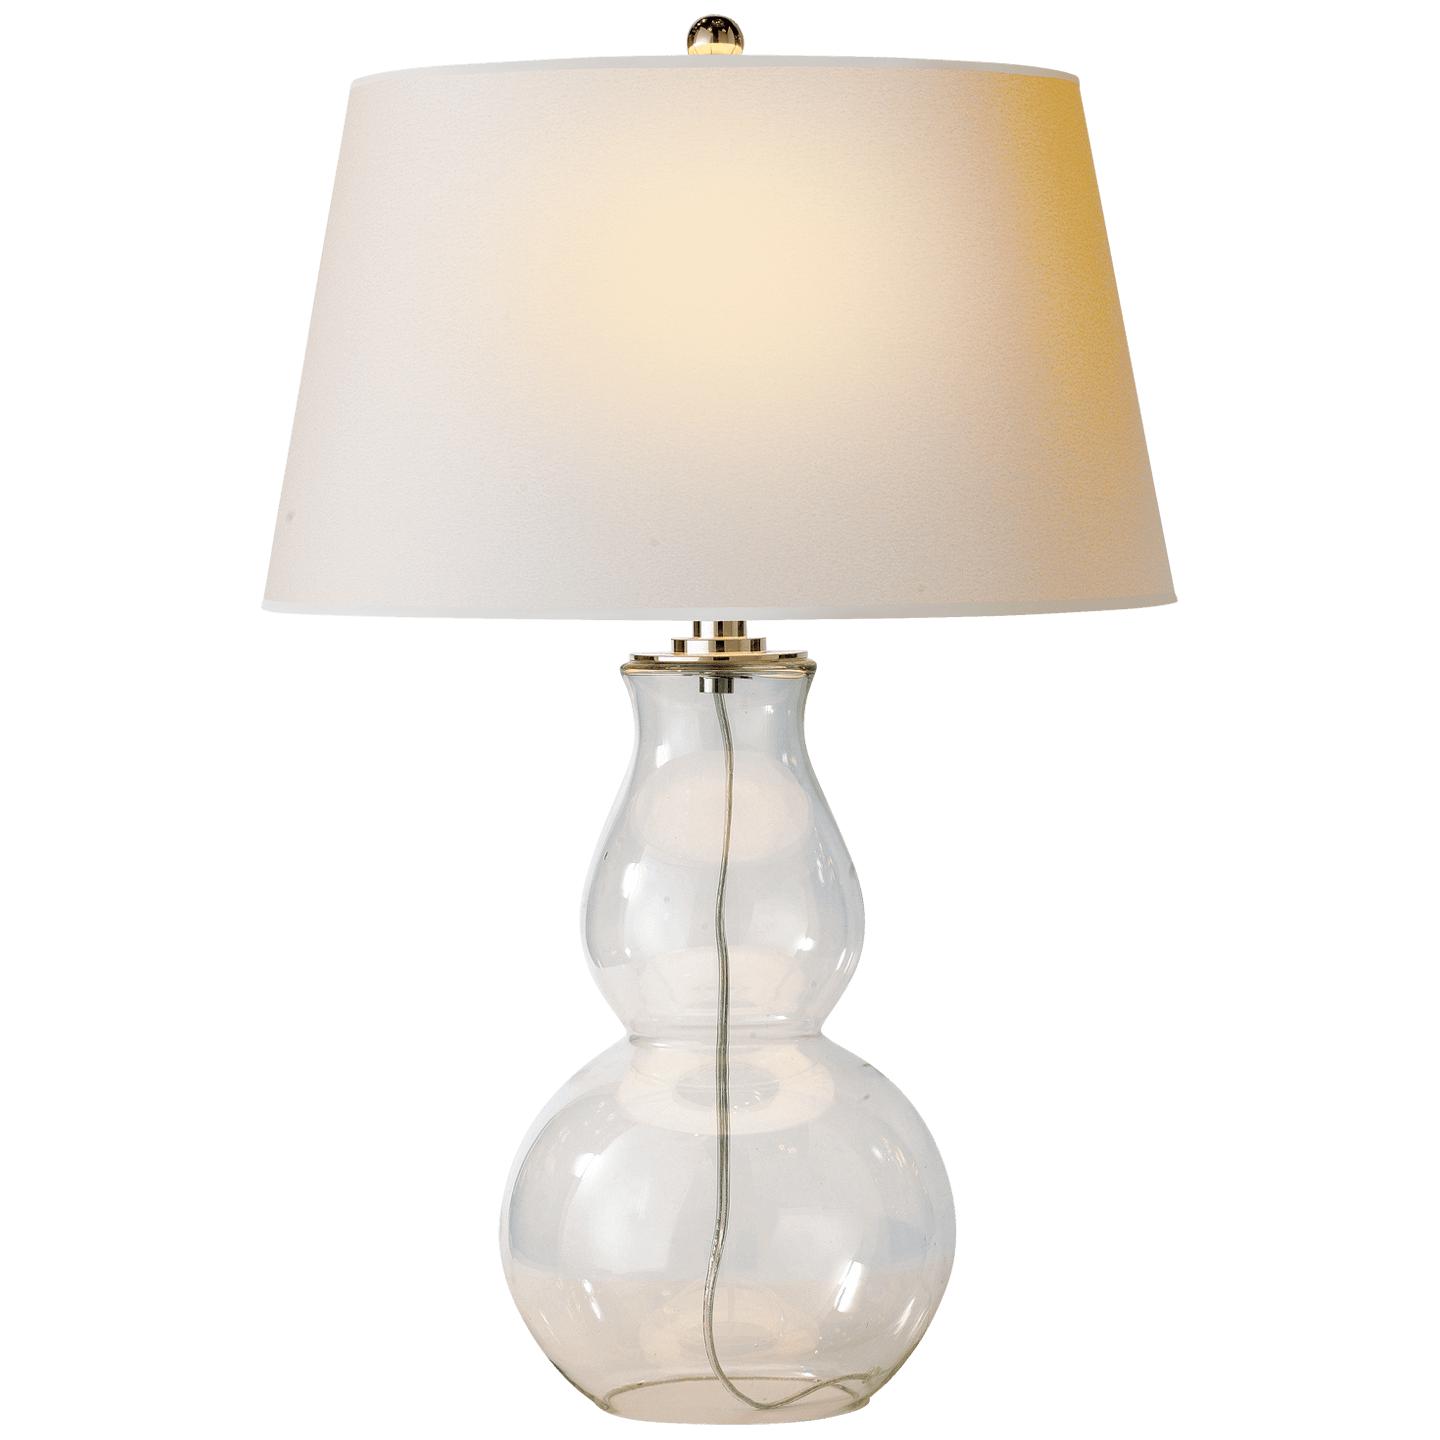 Купить Настольная лампа Open Bottom Gourd Table Lamp в интернет-магазине roooms.ru